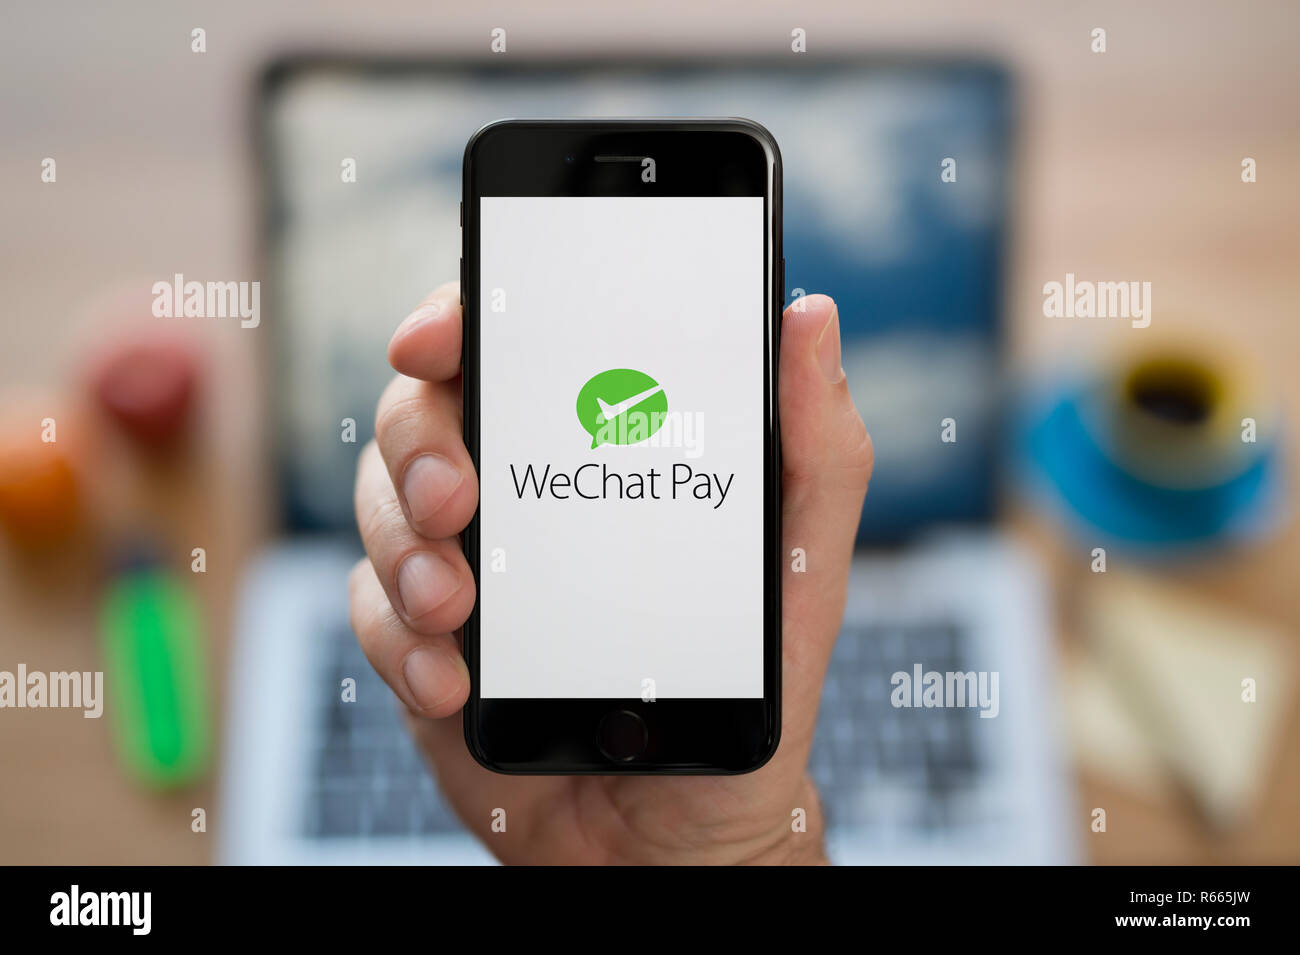 Un hombre mira el iPhone que muestra el logotipo de pago WeChat, mientras estaba sentado en su escritorio de ordenador (uso Editorial solamente). Foto de stock